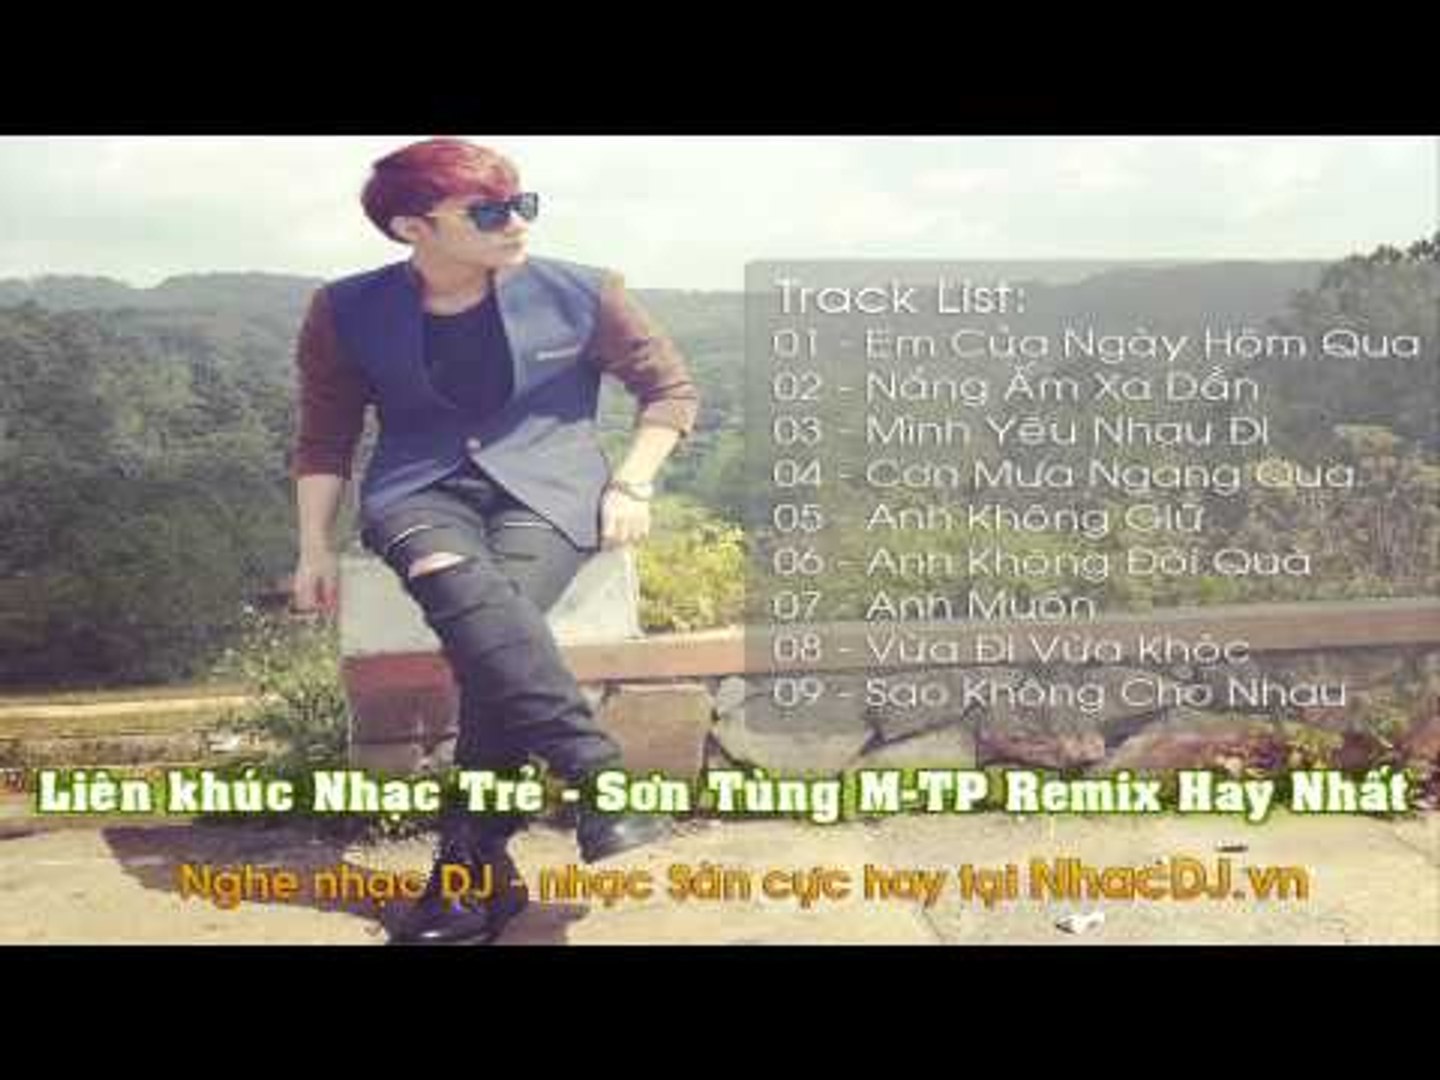 Liên khúc Nhạc Trẻ - Sơn Tùng M-TP Remix Hay Nhất 2016